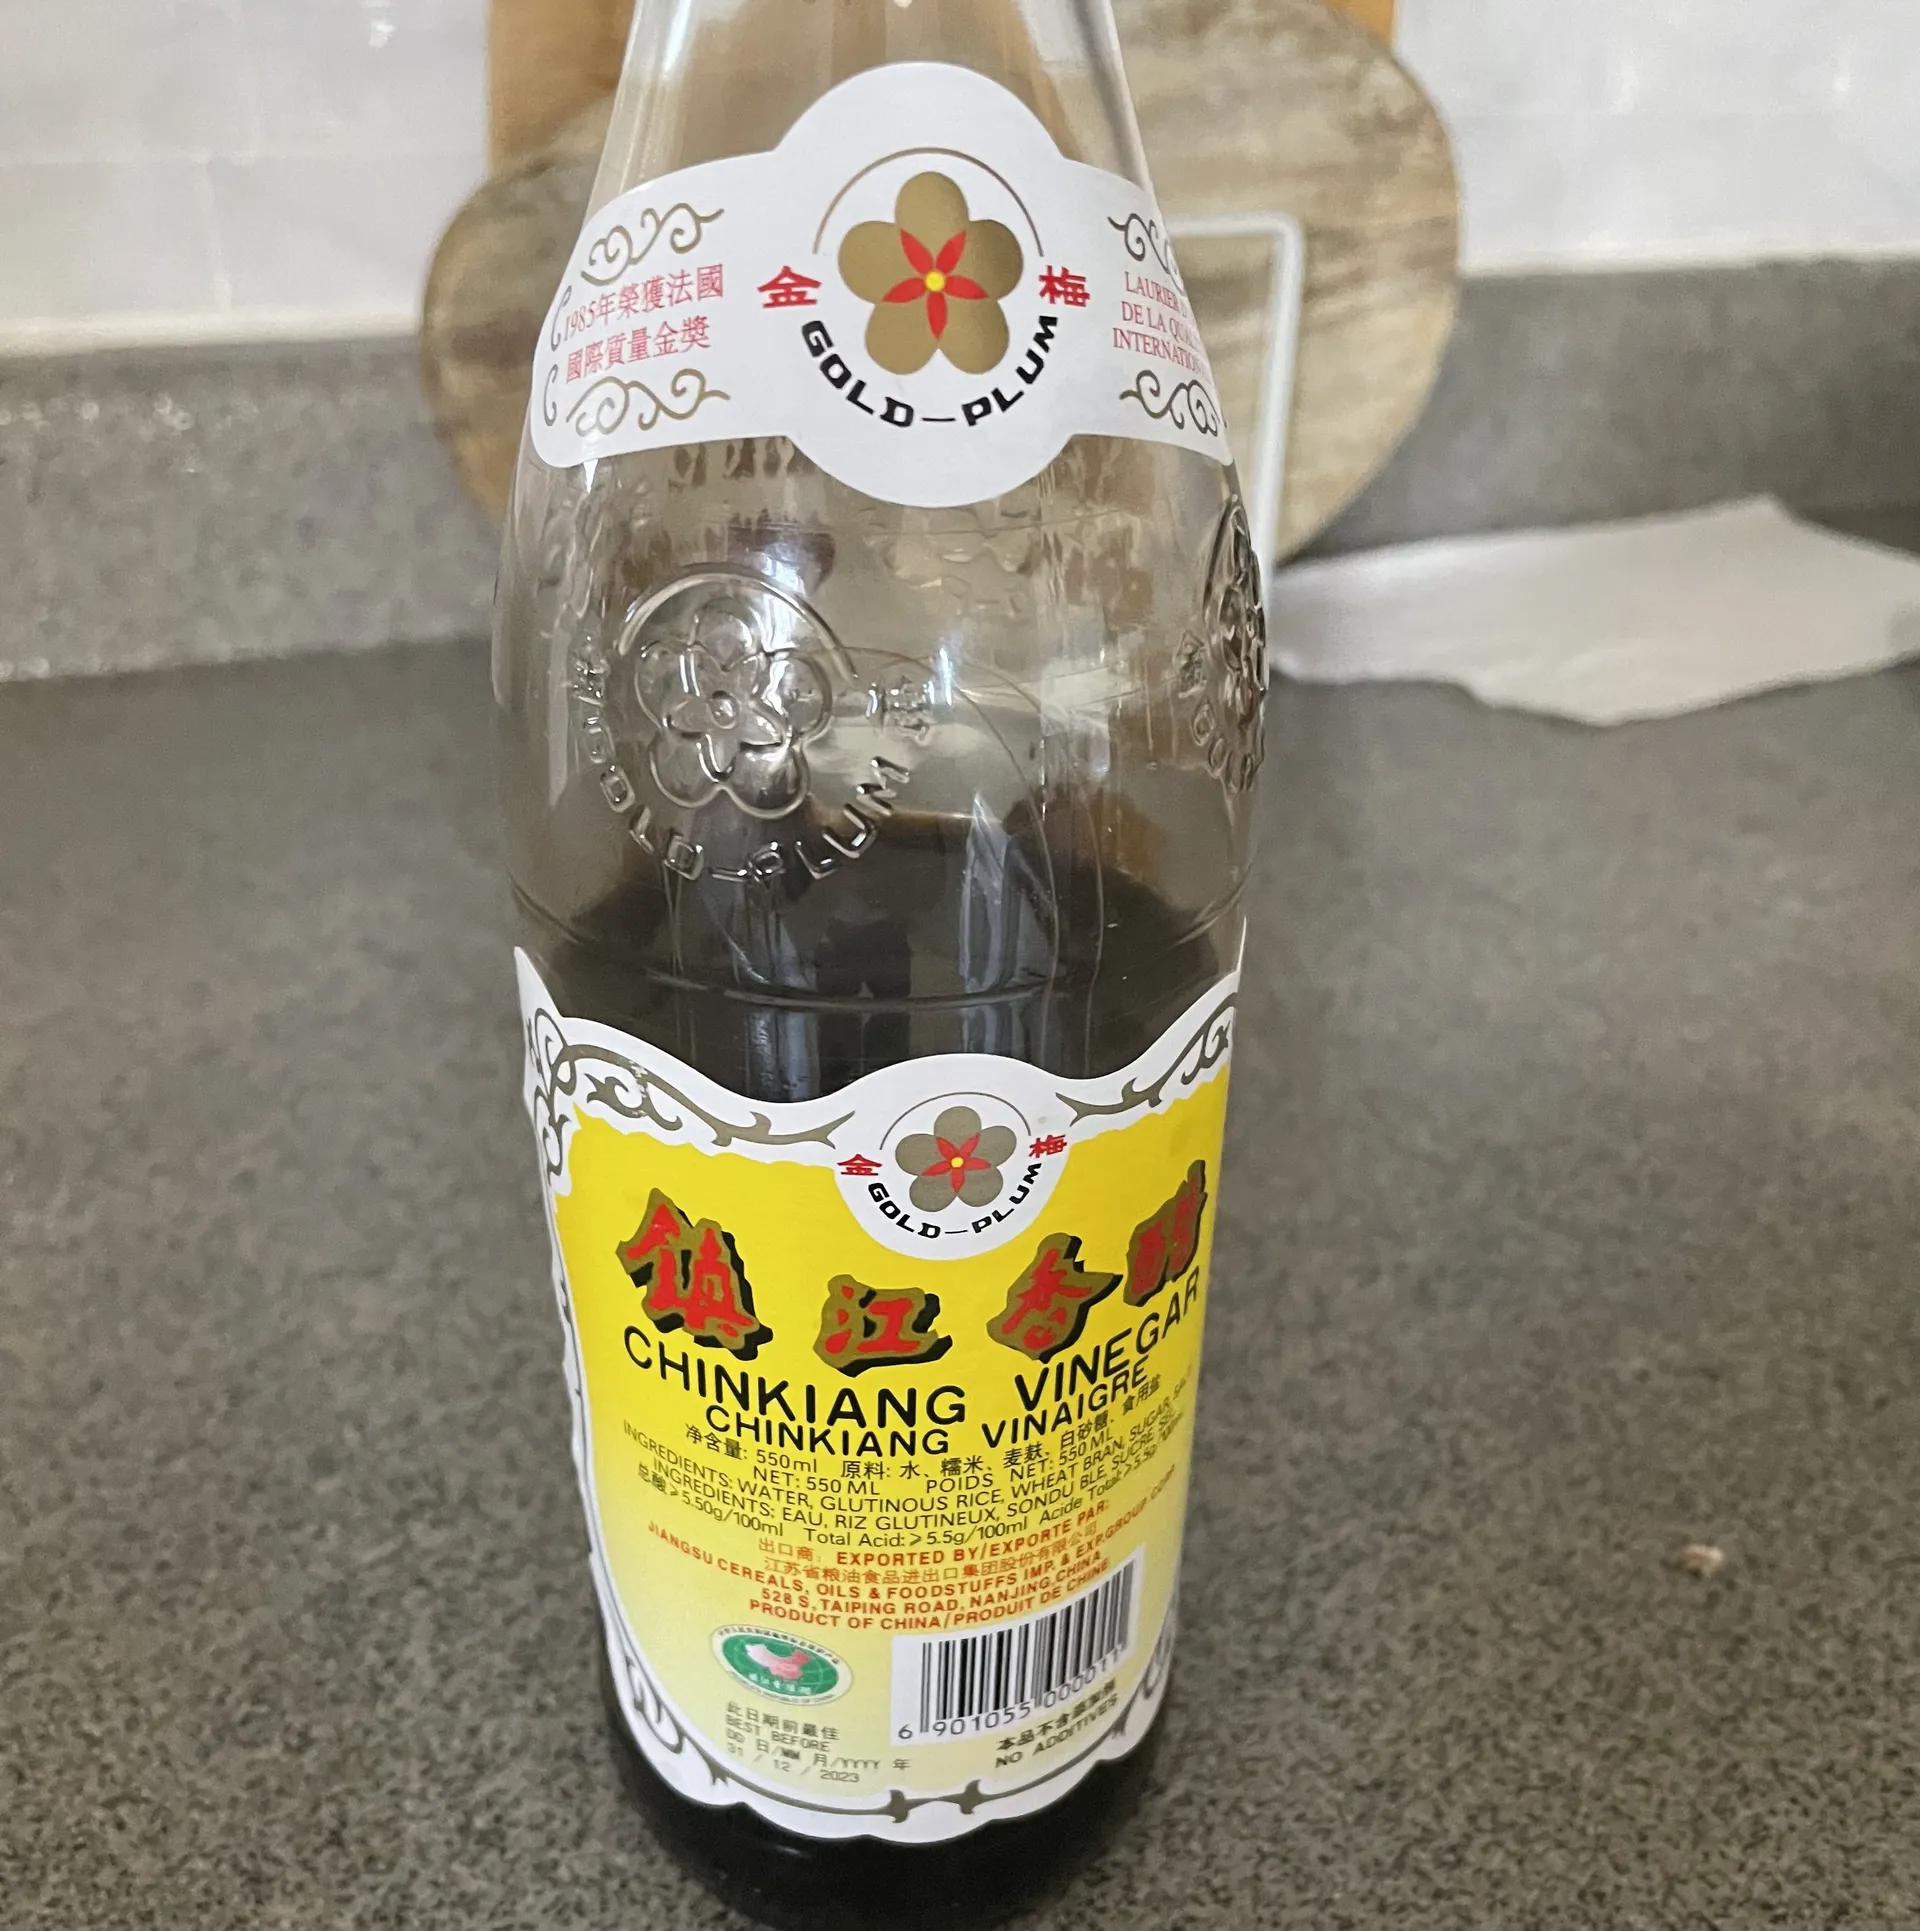 Zhejiang or Chinkiang rice vinegar can be purchased at Asian food supermarkets